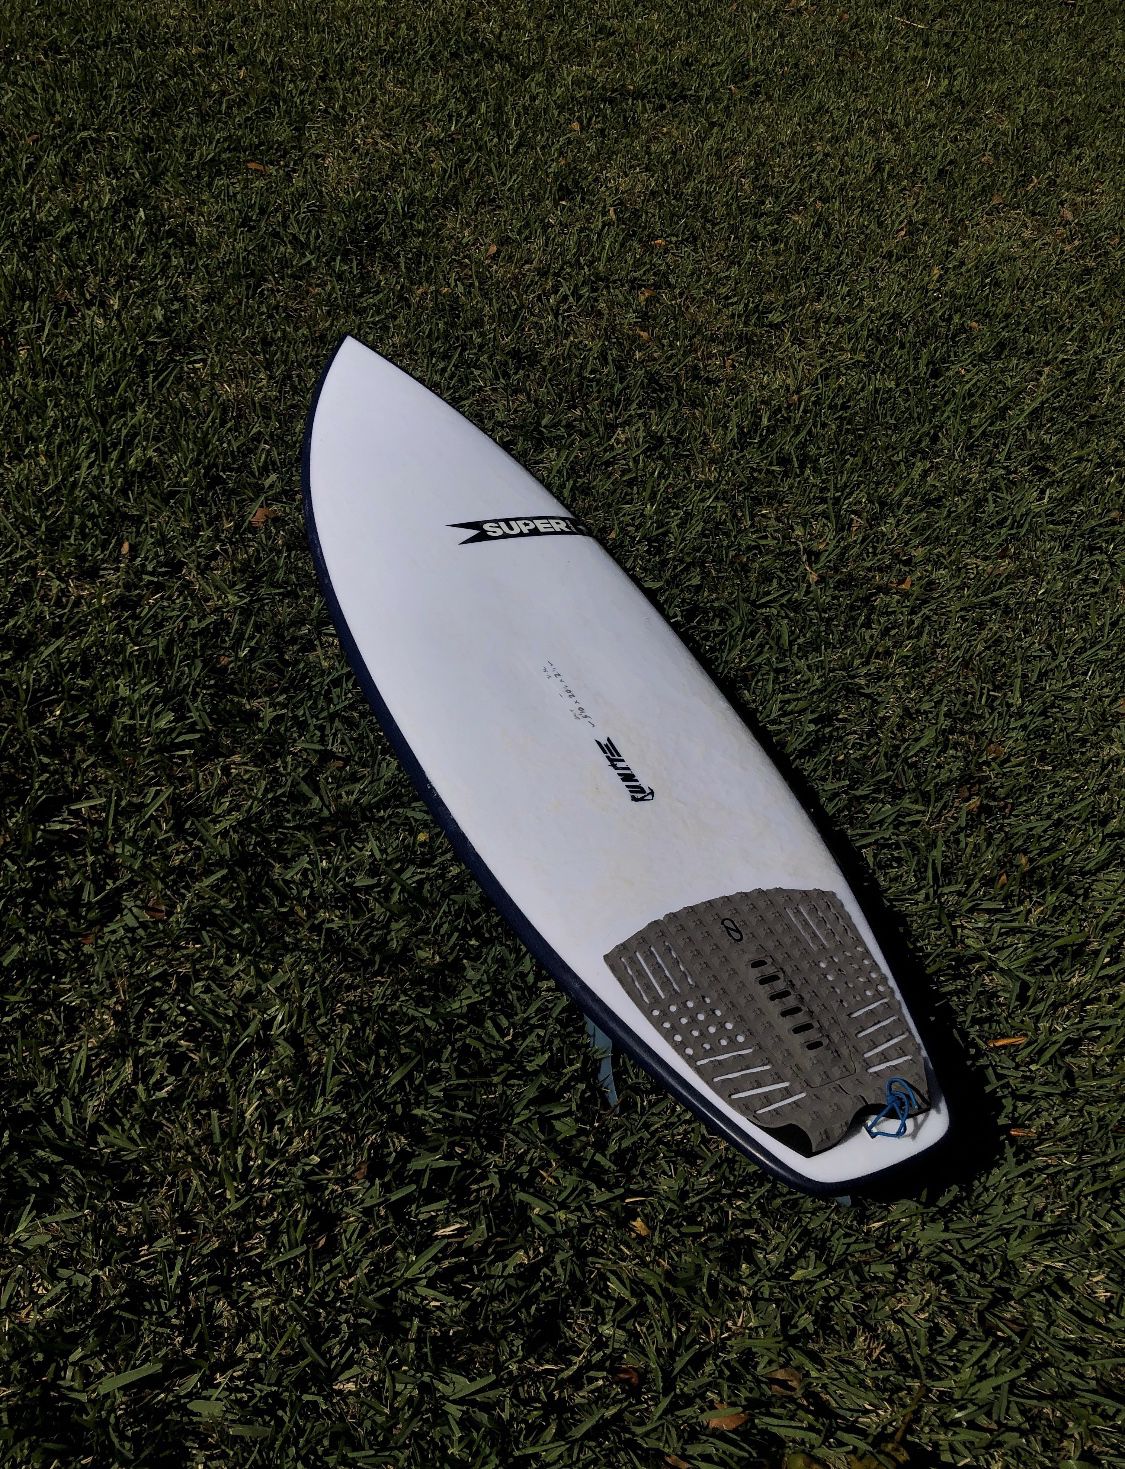 Super “Unit” 5’10 x 20 1/4 x 21/2 31.5 Liters Surfboard